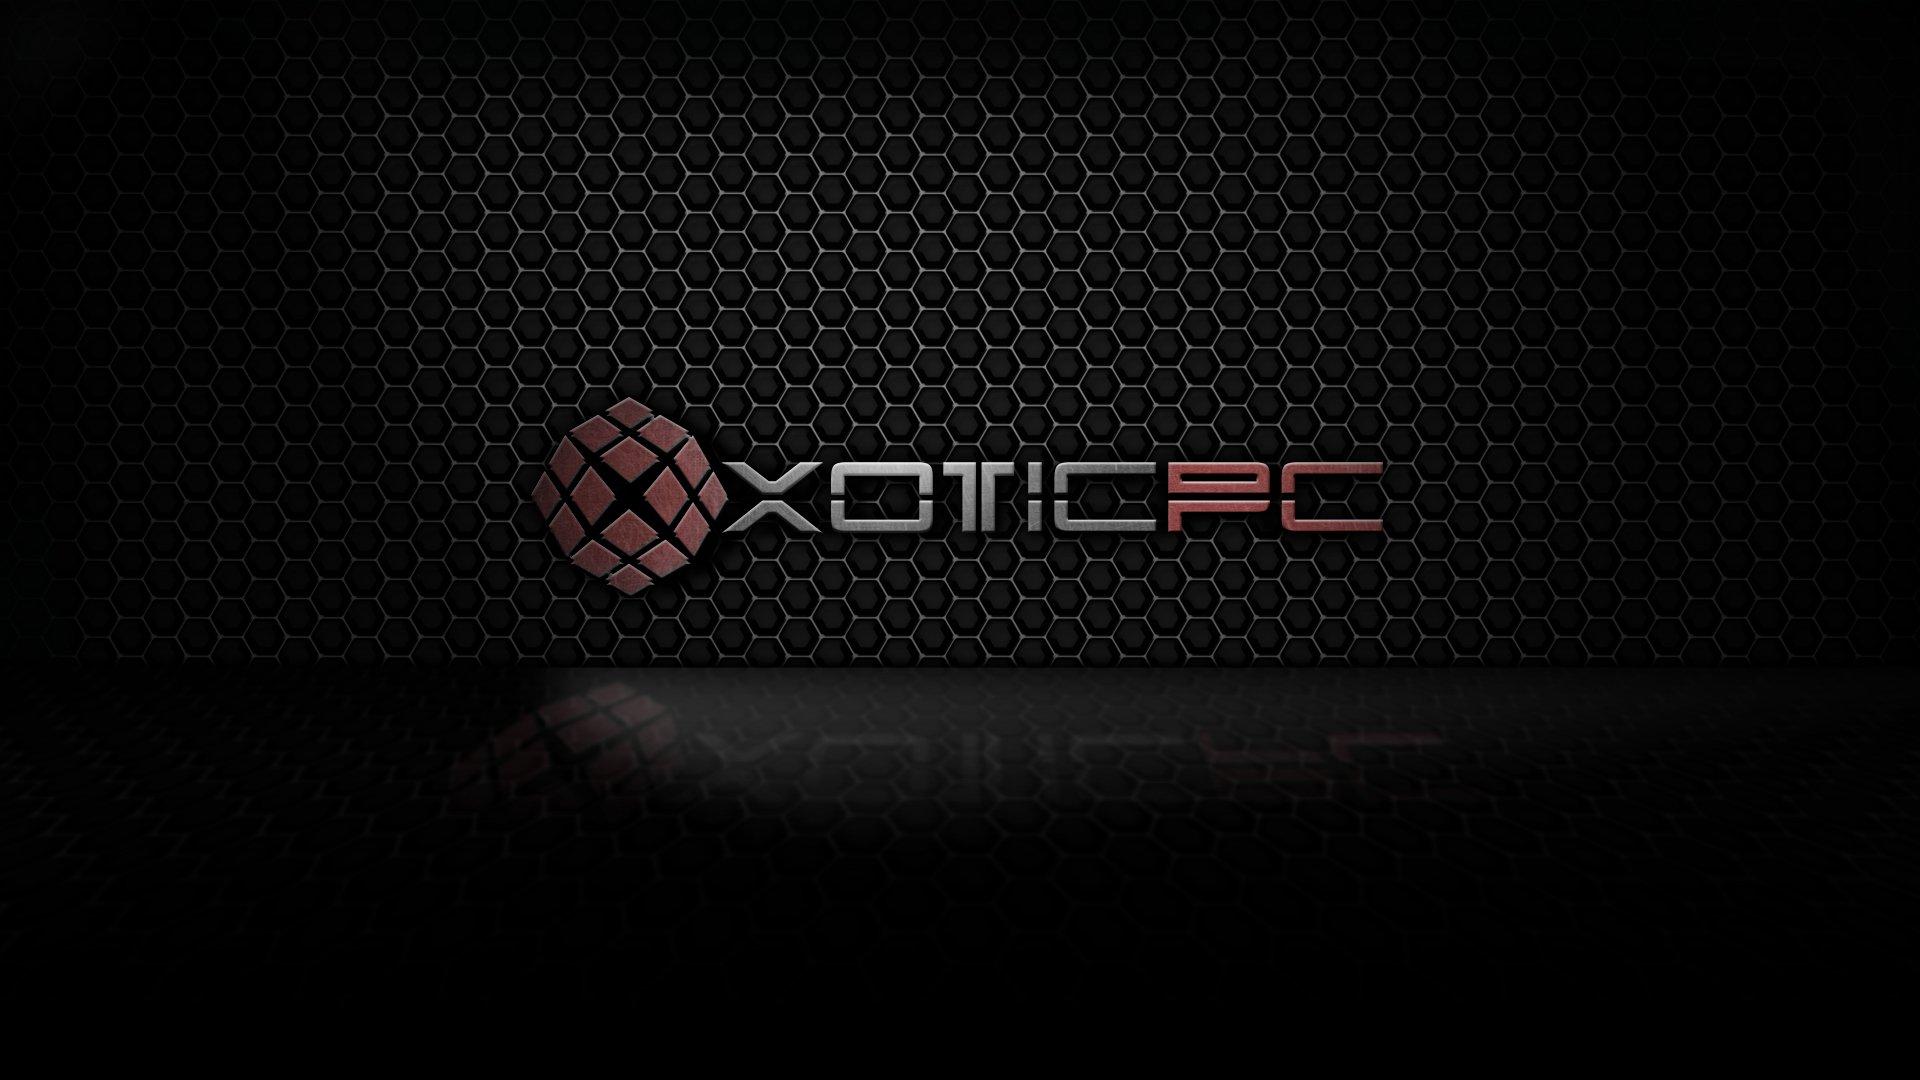 Xotic PC “thâm nhập thực tế ảo” với bộ loạt sản phẩm mới